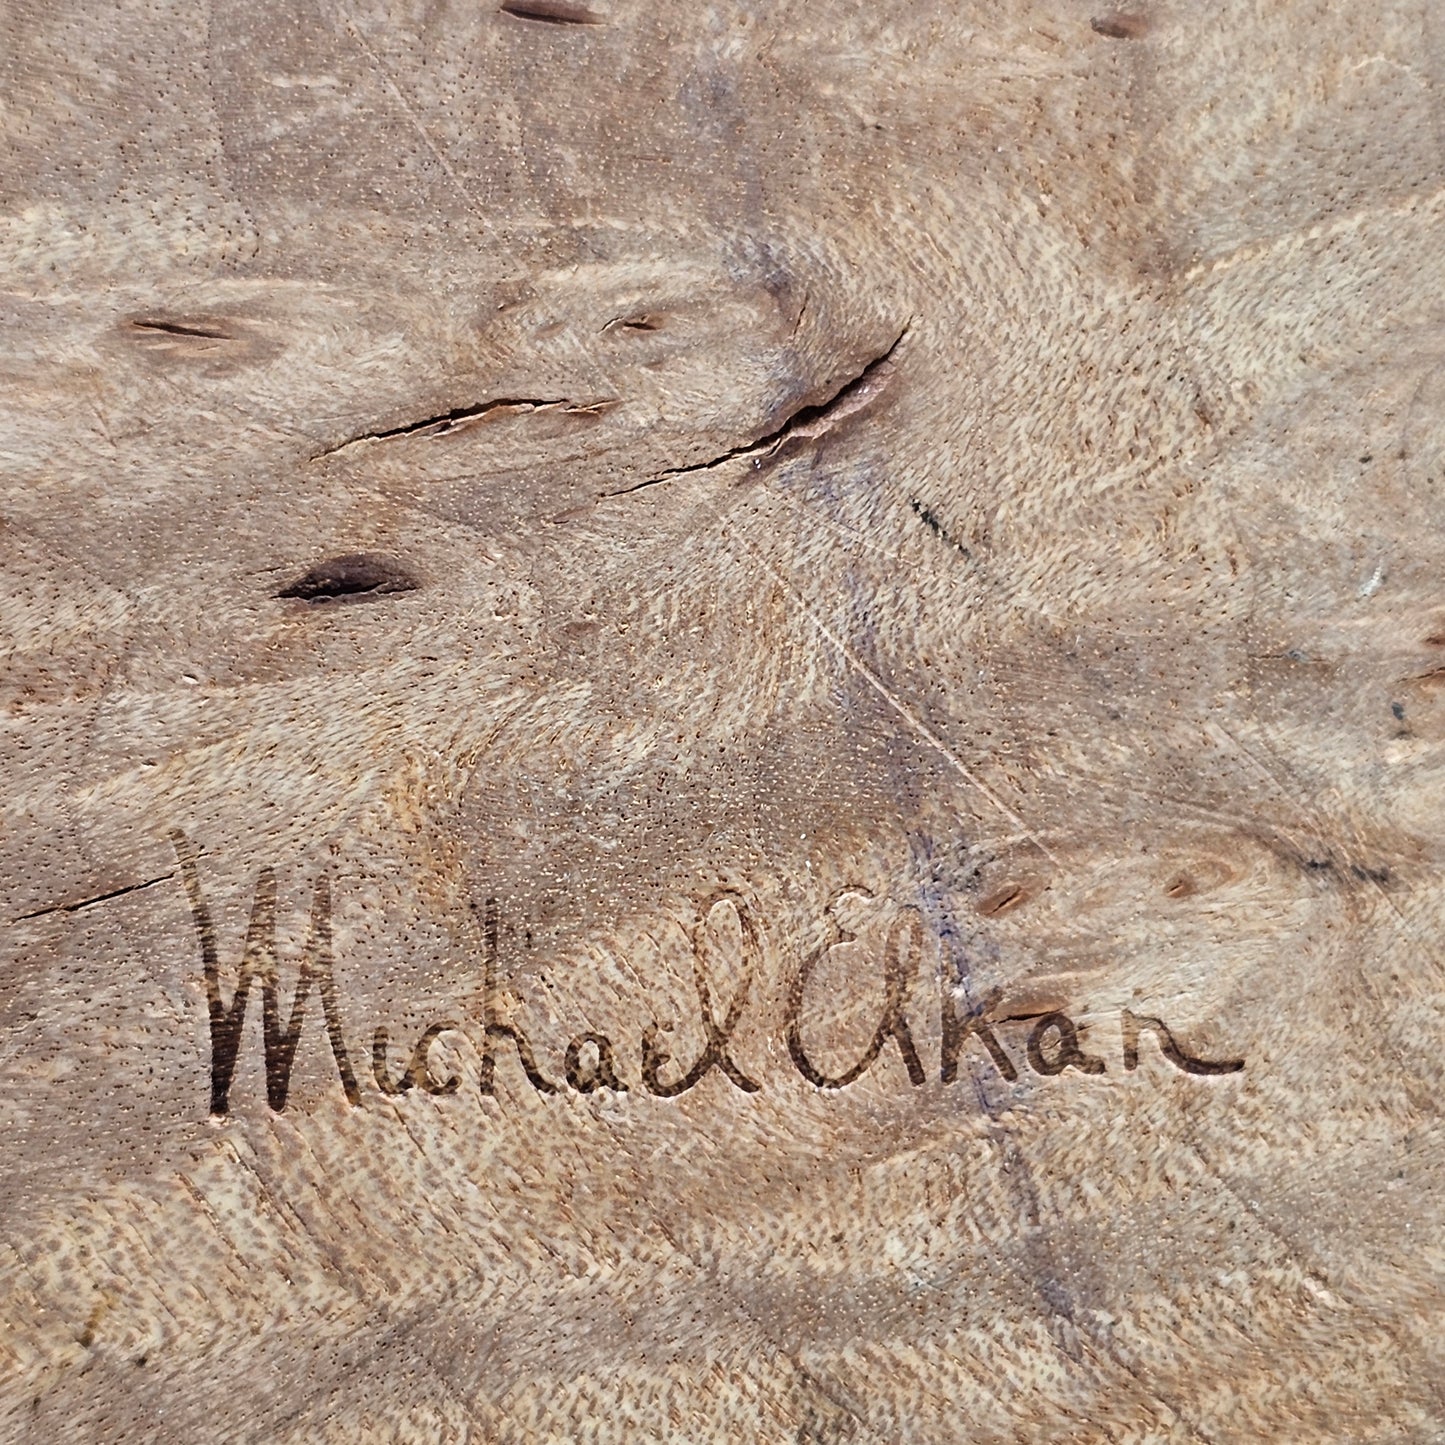 Vintage Signed Michael Elkan Burl Wood Hinged Box